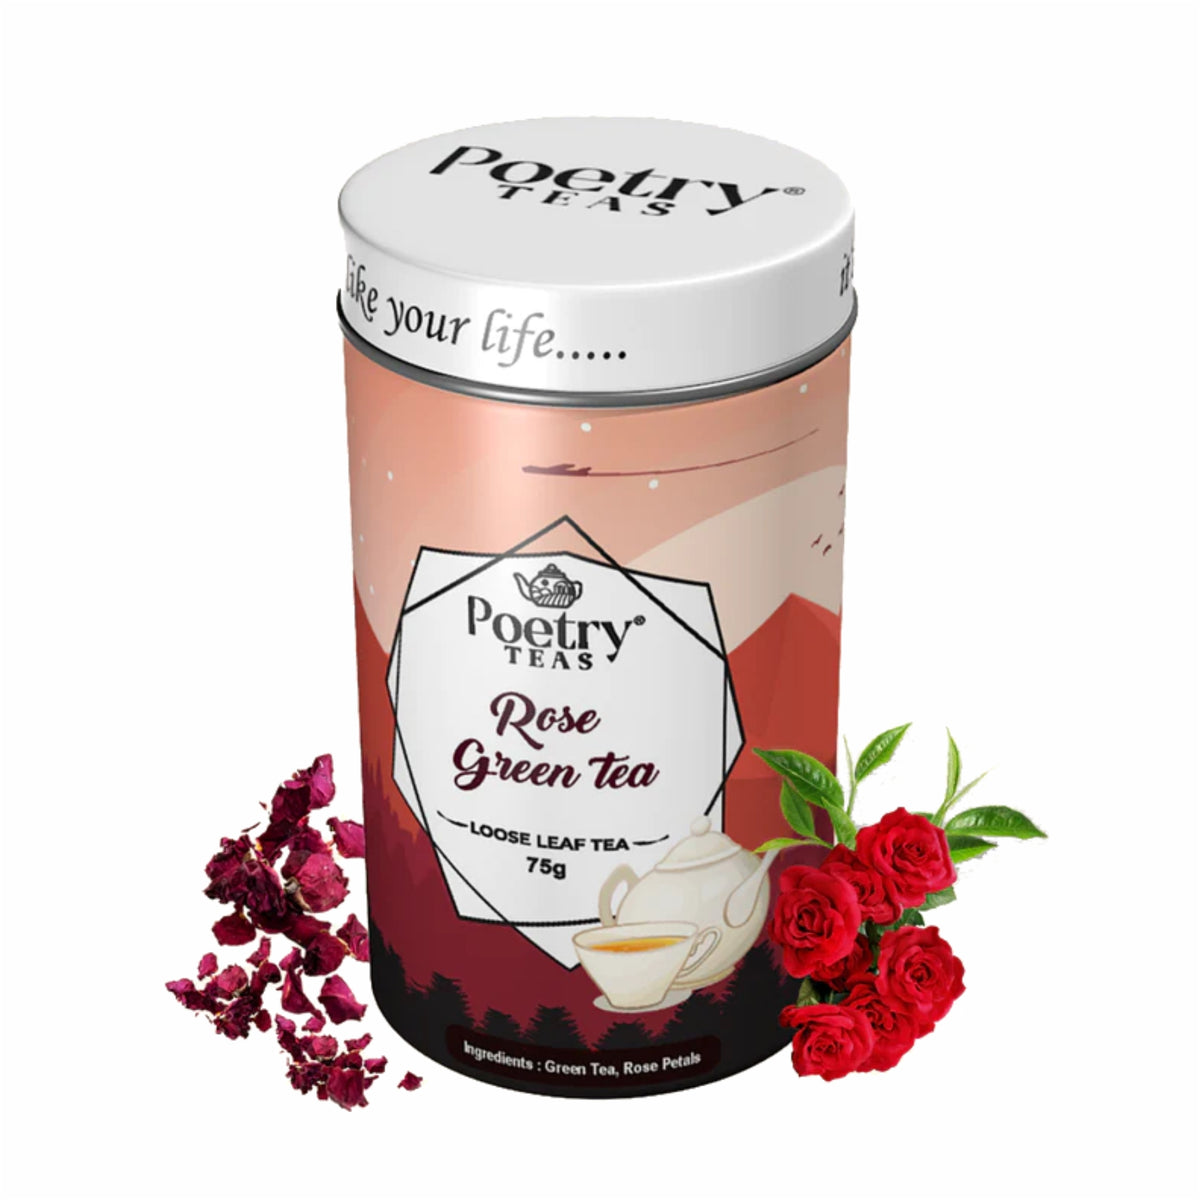 Rose Green Tea- Loose Leaf Tea